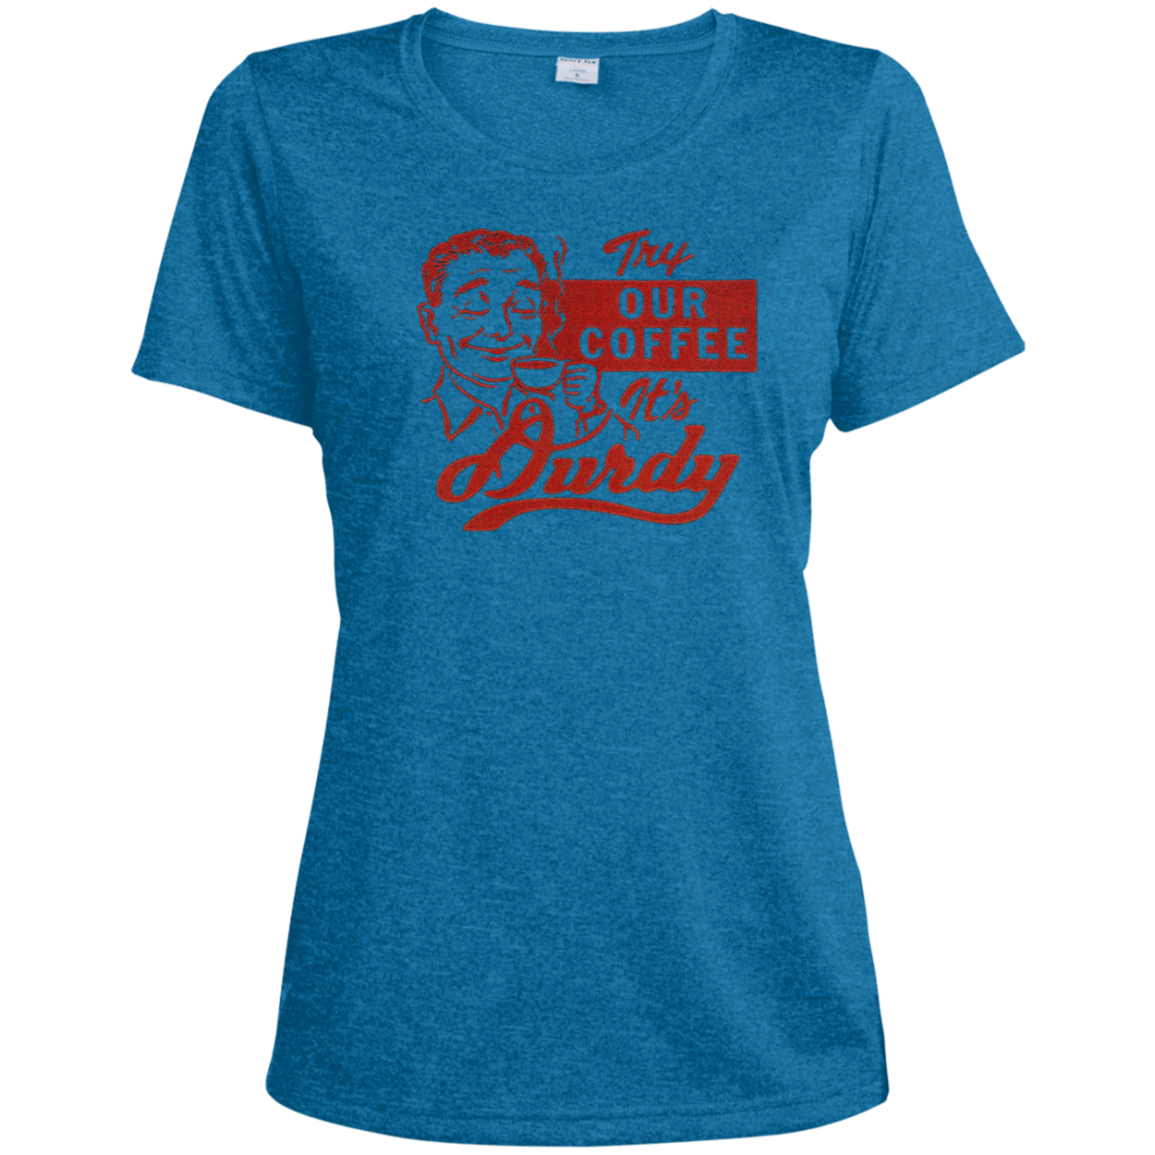 Durdy Coffee Sport-Tek Ladies' Heather Dri-Fit Moisture-Wicking T-Shirt